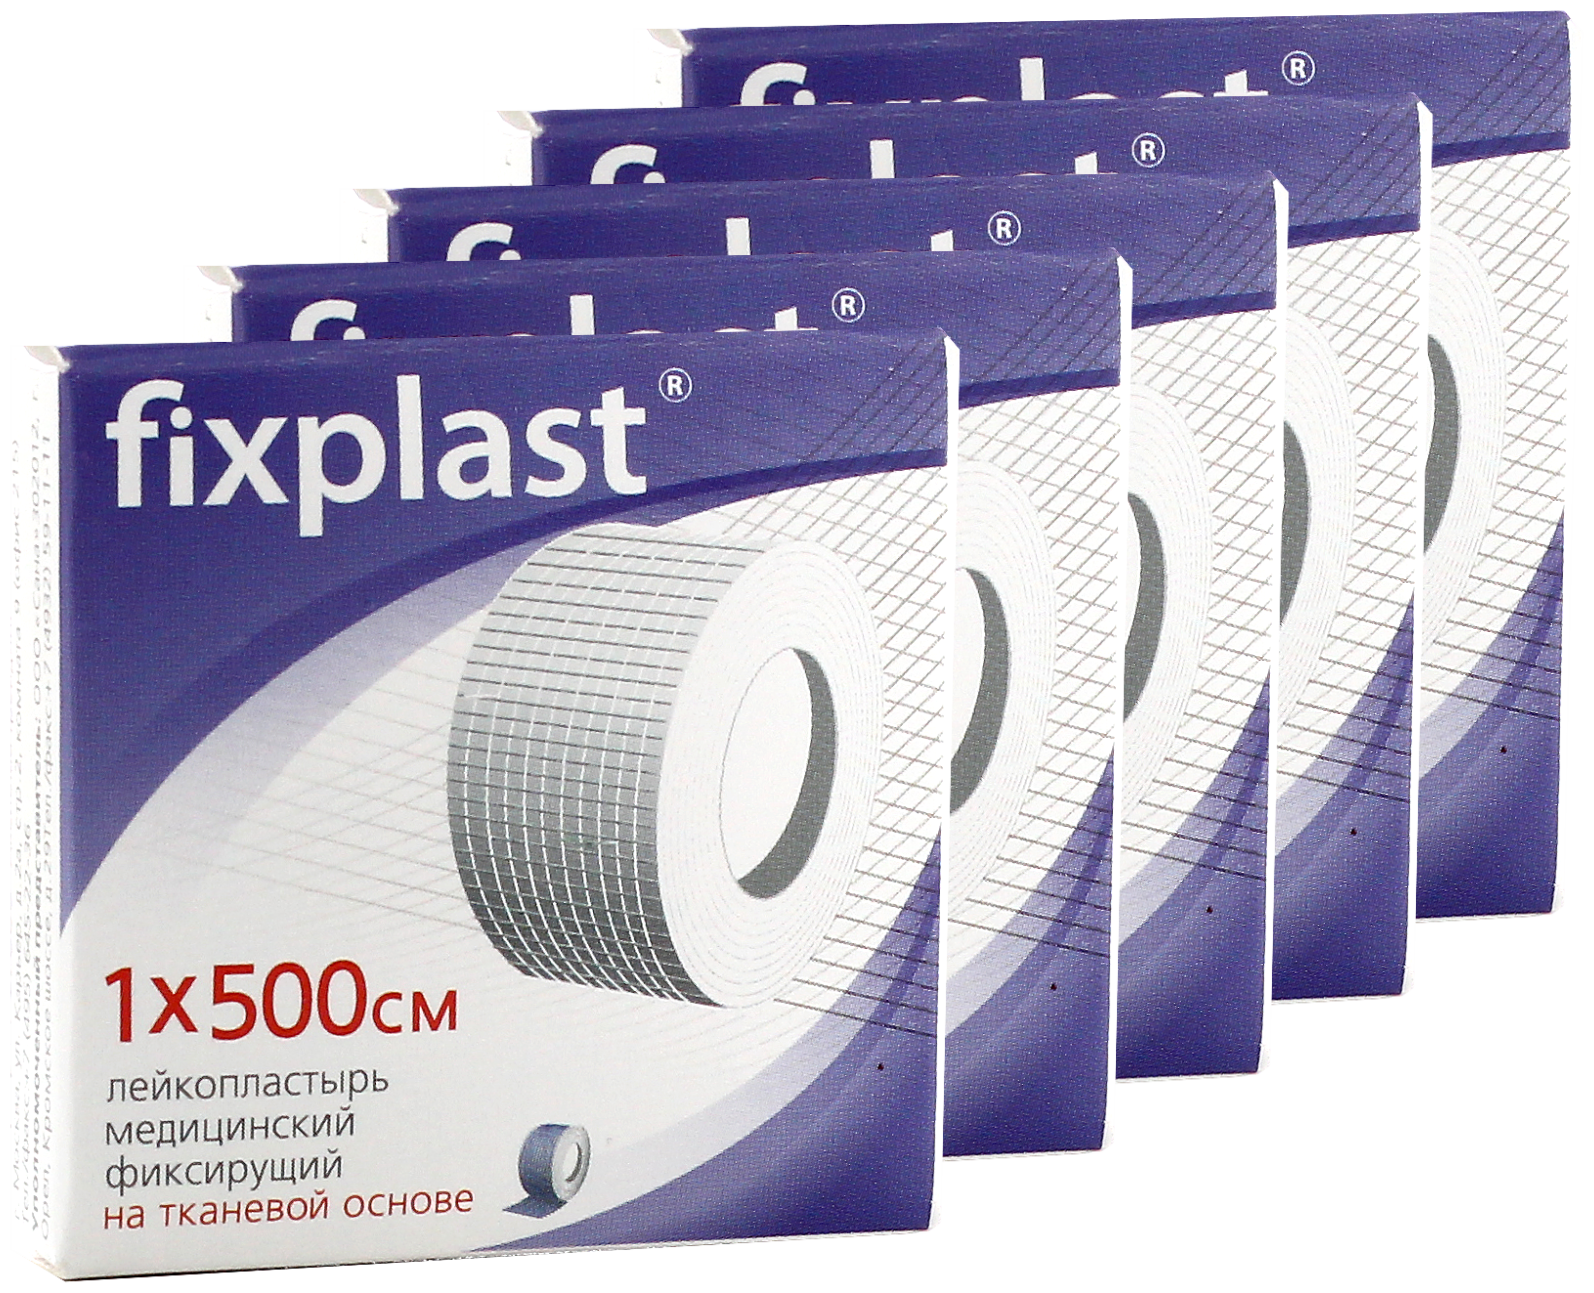 Fixplast Лейкопластырь медицинский фиксирующий тканевая основа 1х500см